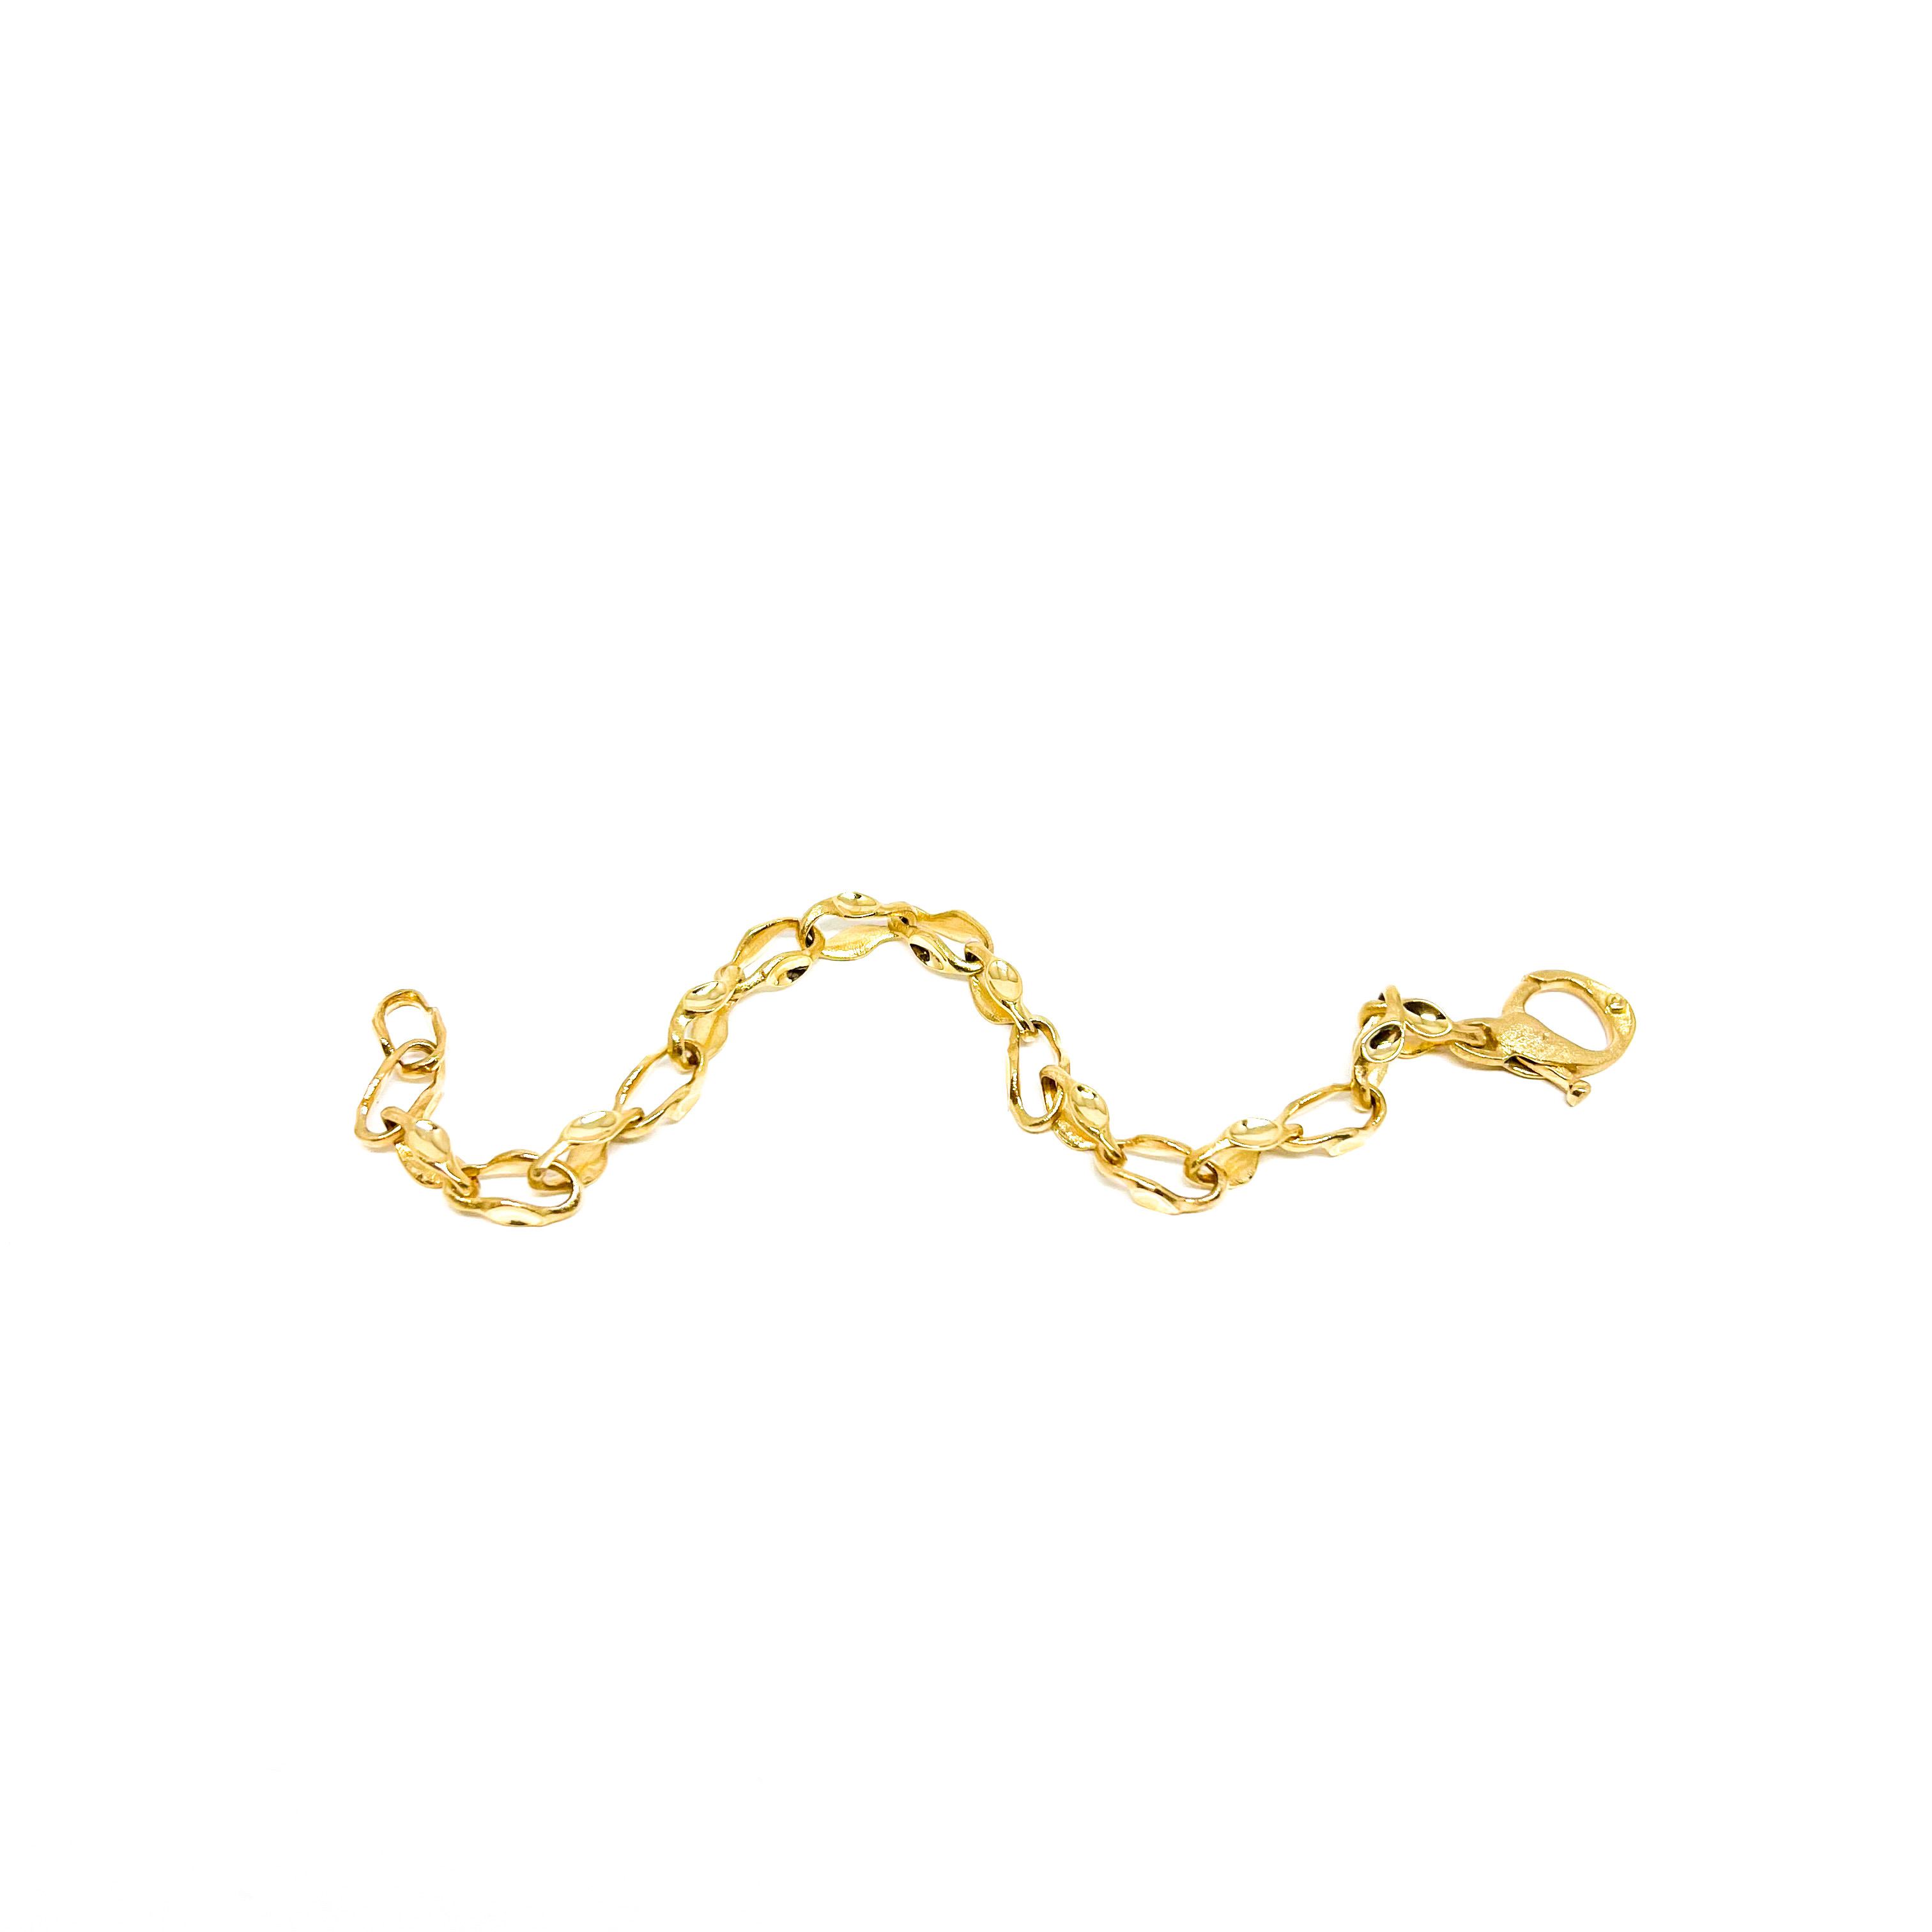 Yellow Gold Organic Chain Bracelet | Von Bargen's Jewelry